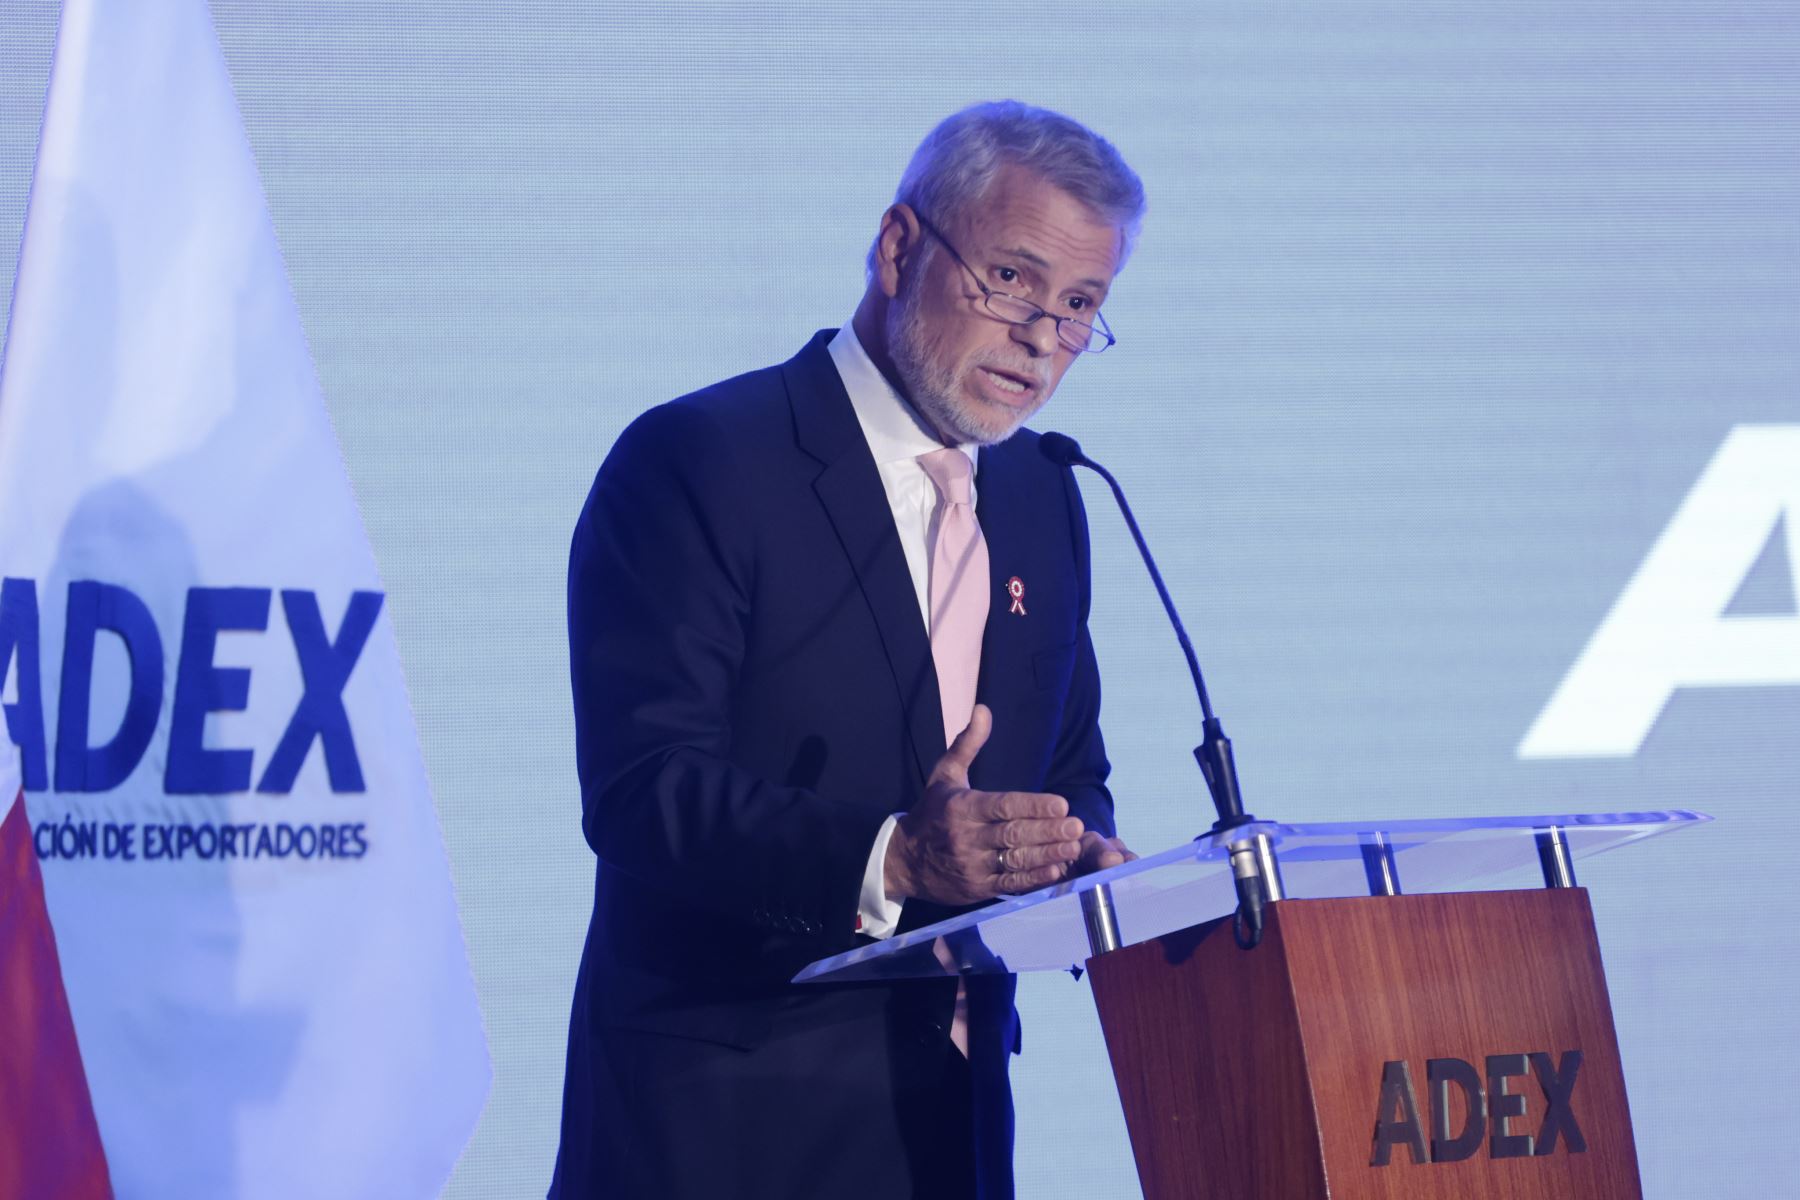 Presidente de Adex, Julio Pérez Alván, hizo un llamado a la unidad nacional para enfrentar los problemas comunes como la pobreza y la delincuencia. ANDINA/Vidal Tarqui